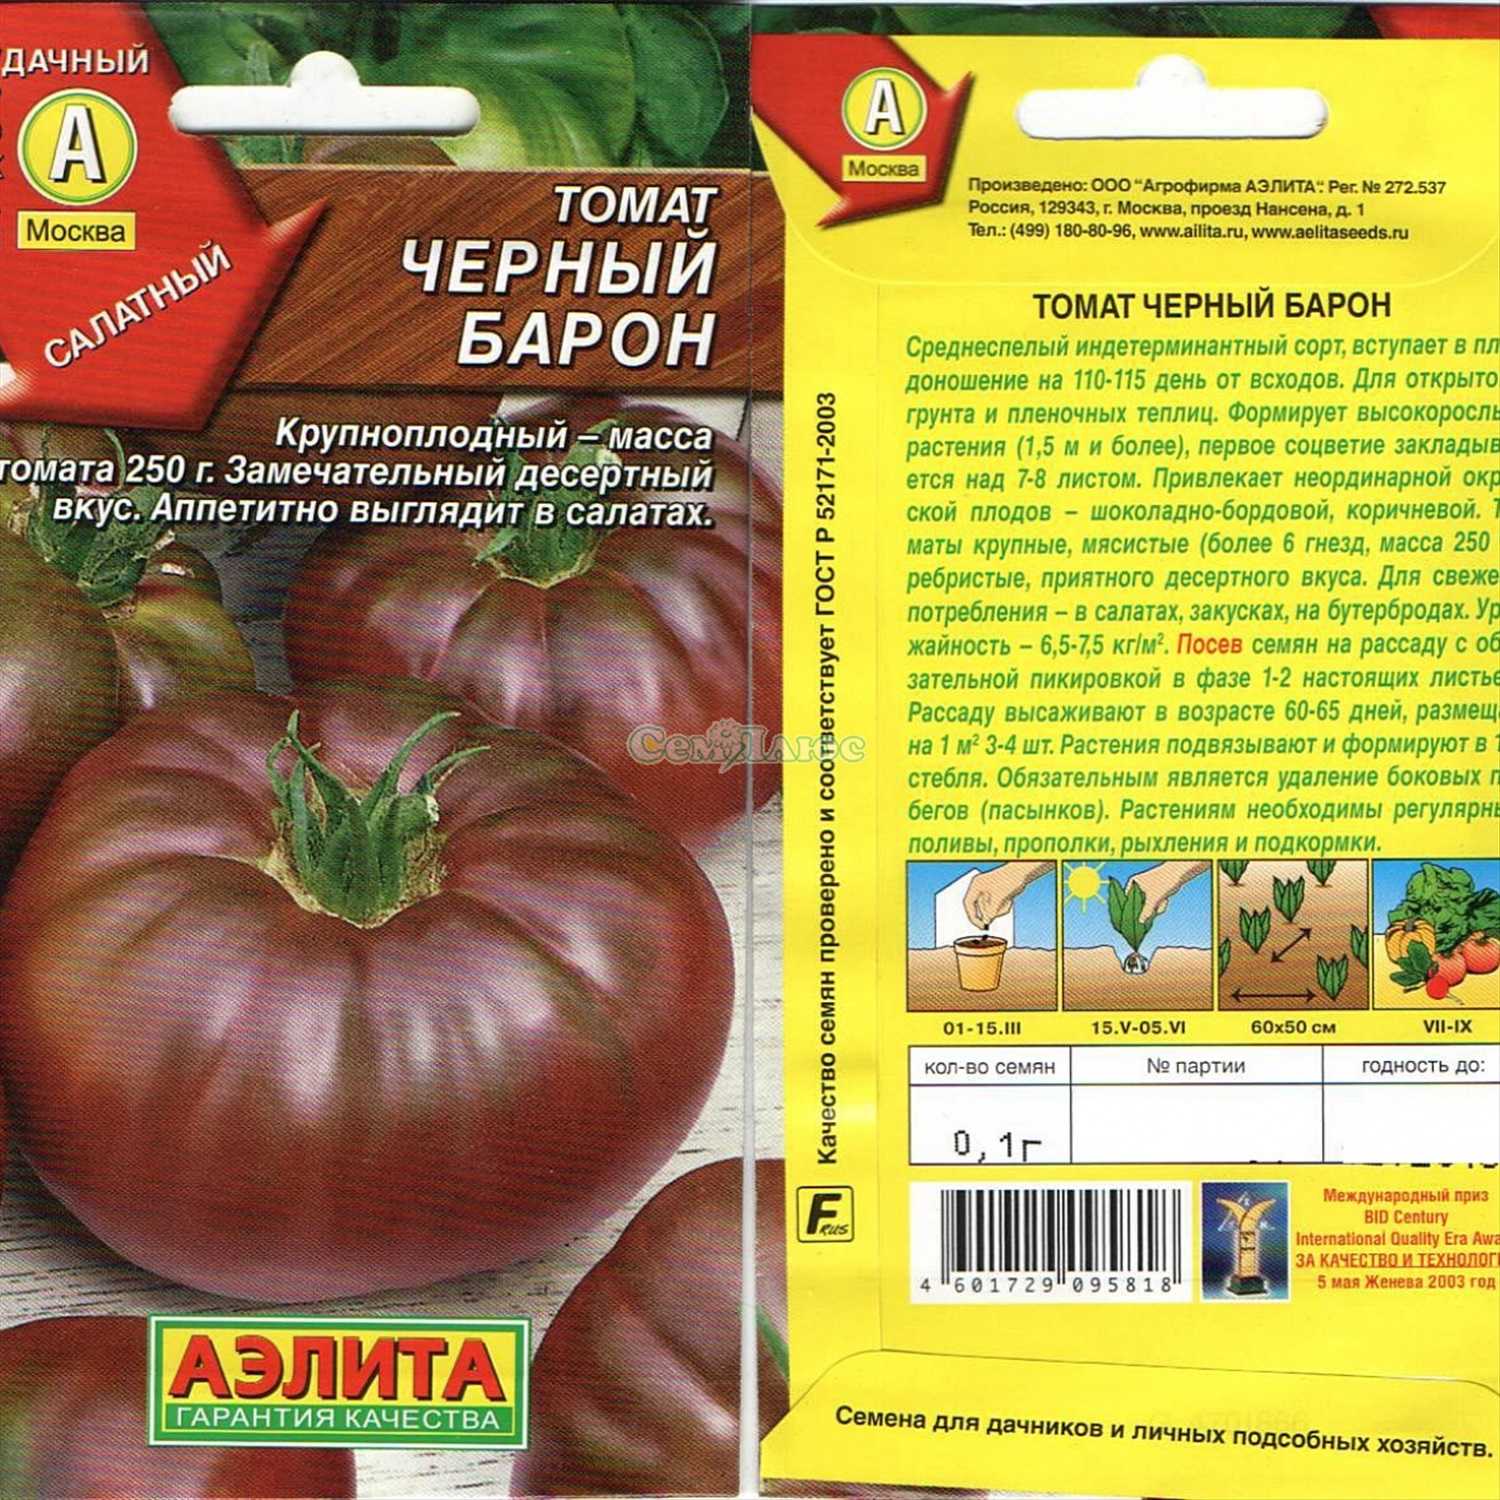 Особенности детерминантных томатов